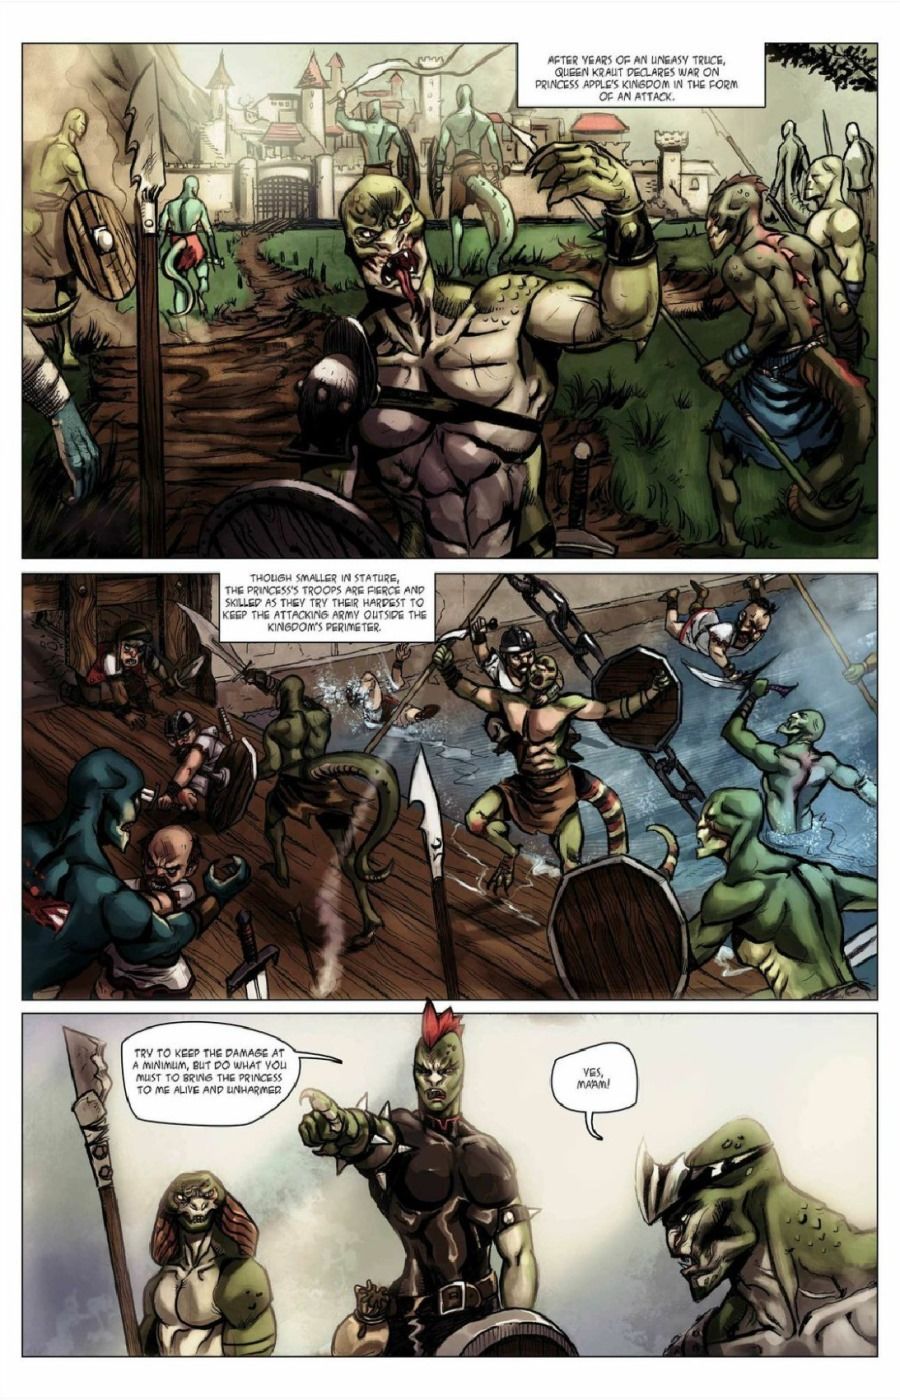 Lizard Kingdom 1-4 page 3